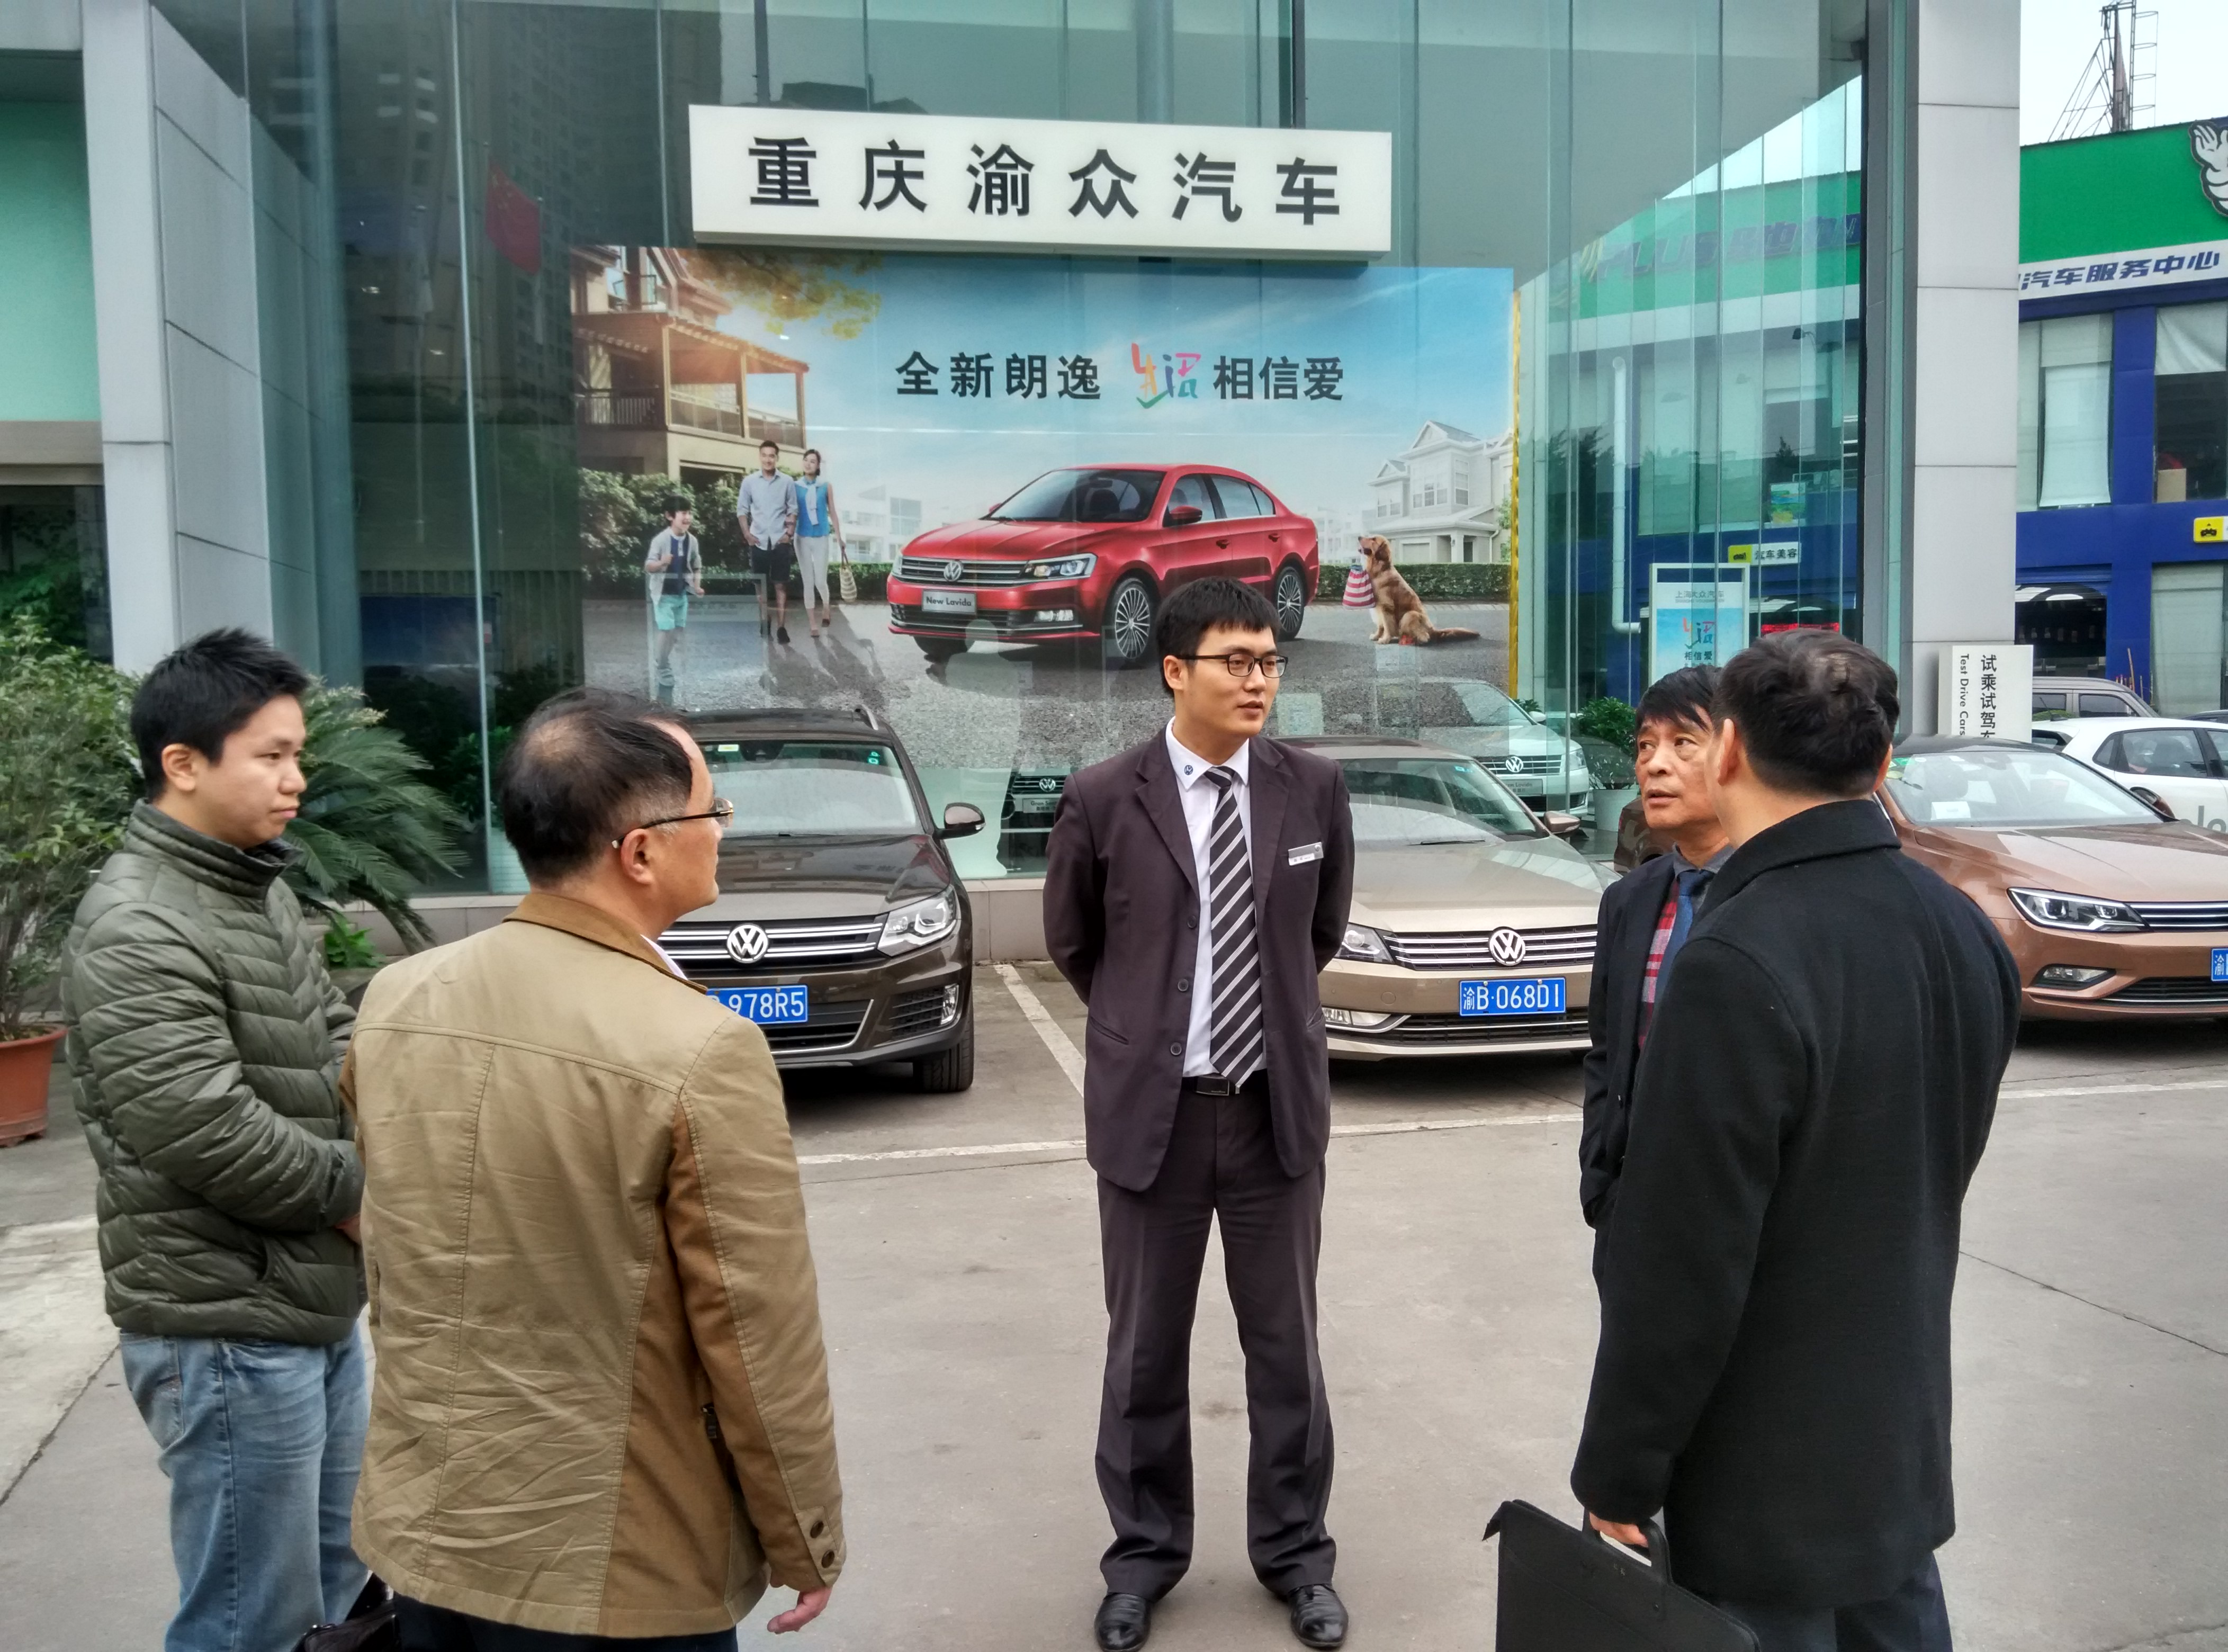 汽车工程系与重庆渝众汽车销售服务有限公司初步达成校企合作意向